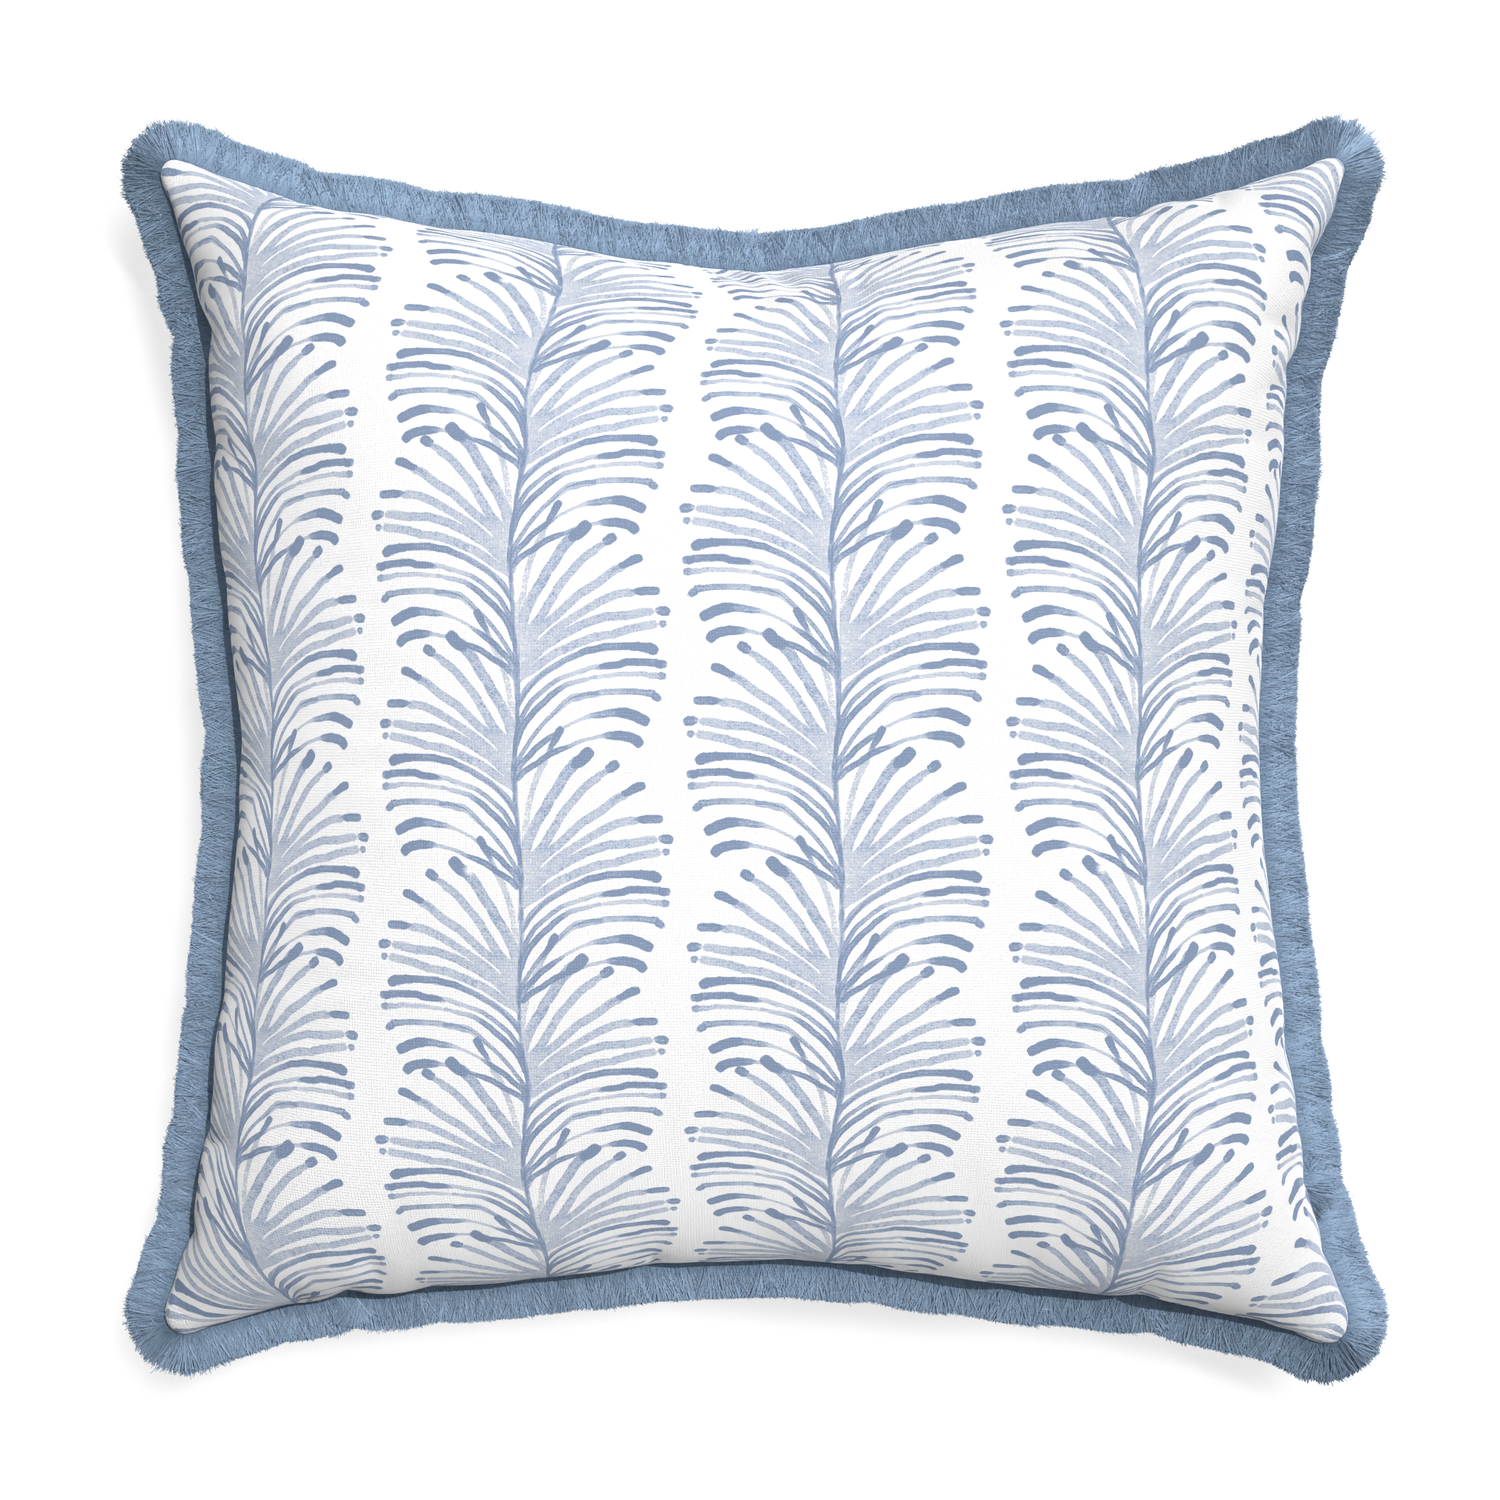 Euro-sham emma sky custom pillow with sky fringe on white background